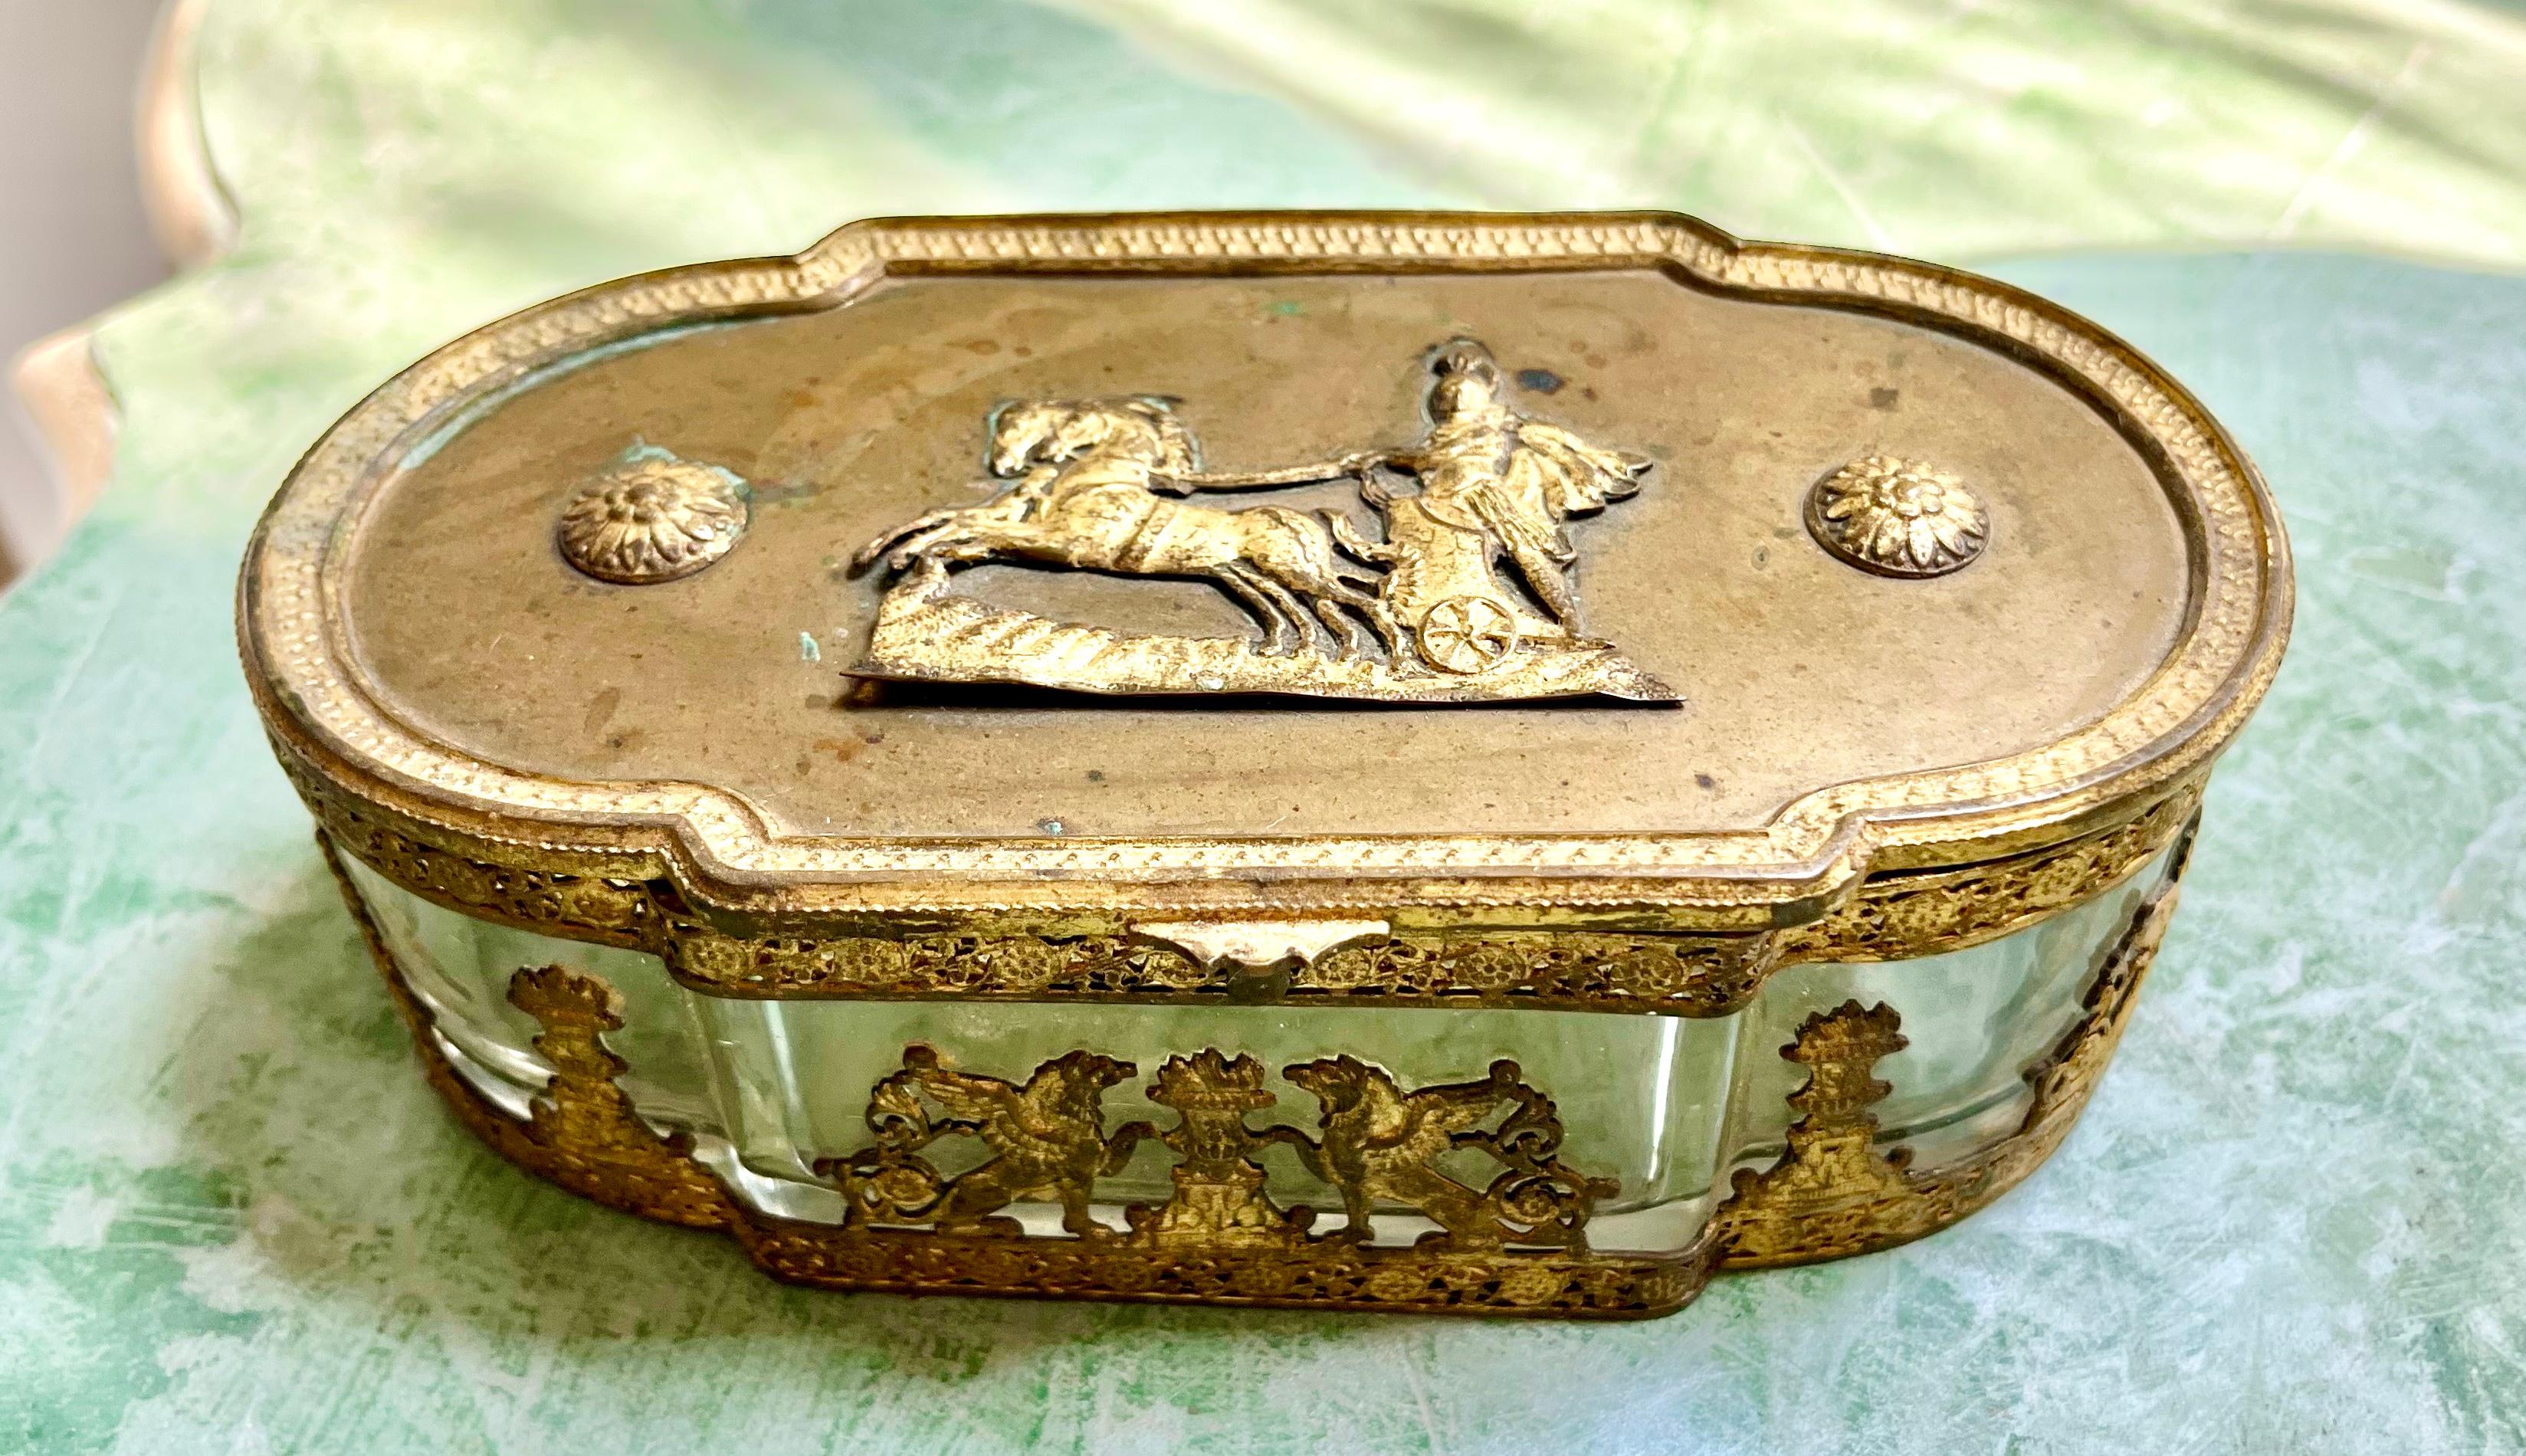 La boîte est une boîte à bibelots ou à bonbons, ornée d'un couvercle en bronze et d'Apollo dans son char orné de rayons de soleil, les côtés étant ornés de griffons et d'urnes florales.

Il s'agit probablement d'un cadeau ou d'un souvenir coûteux à